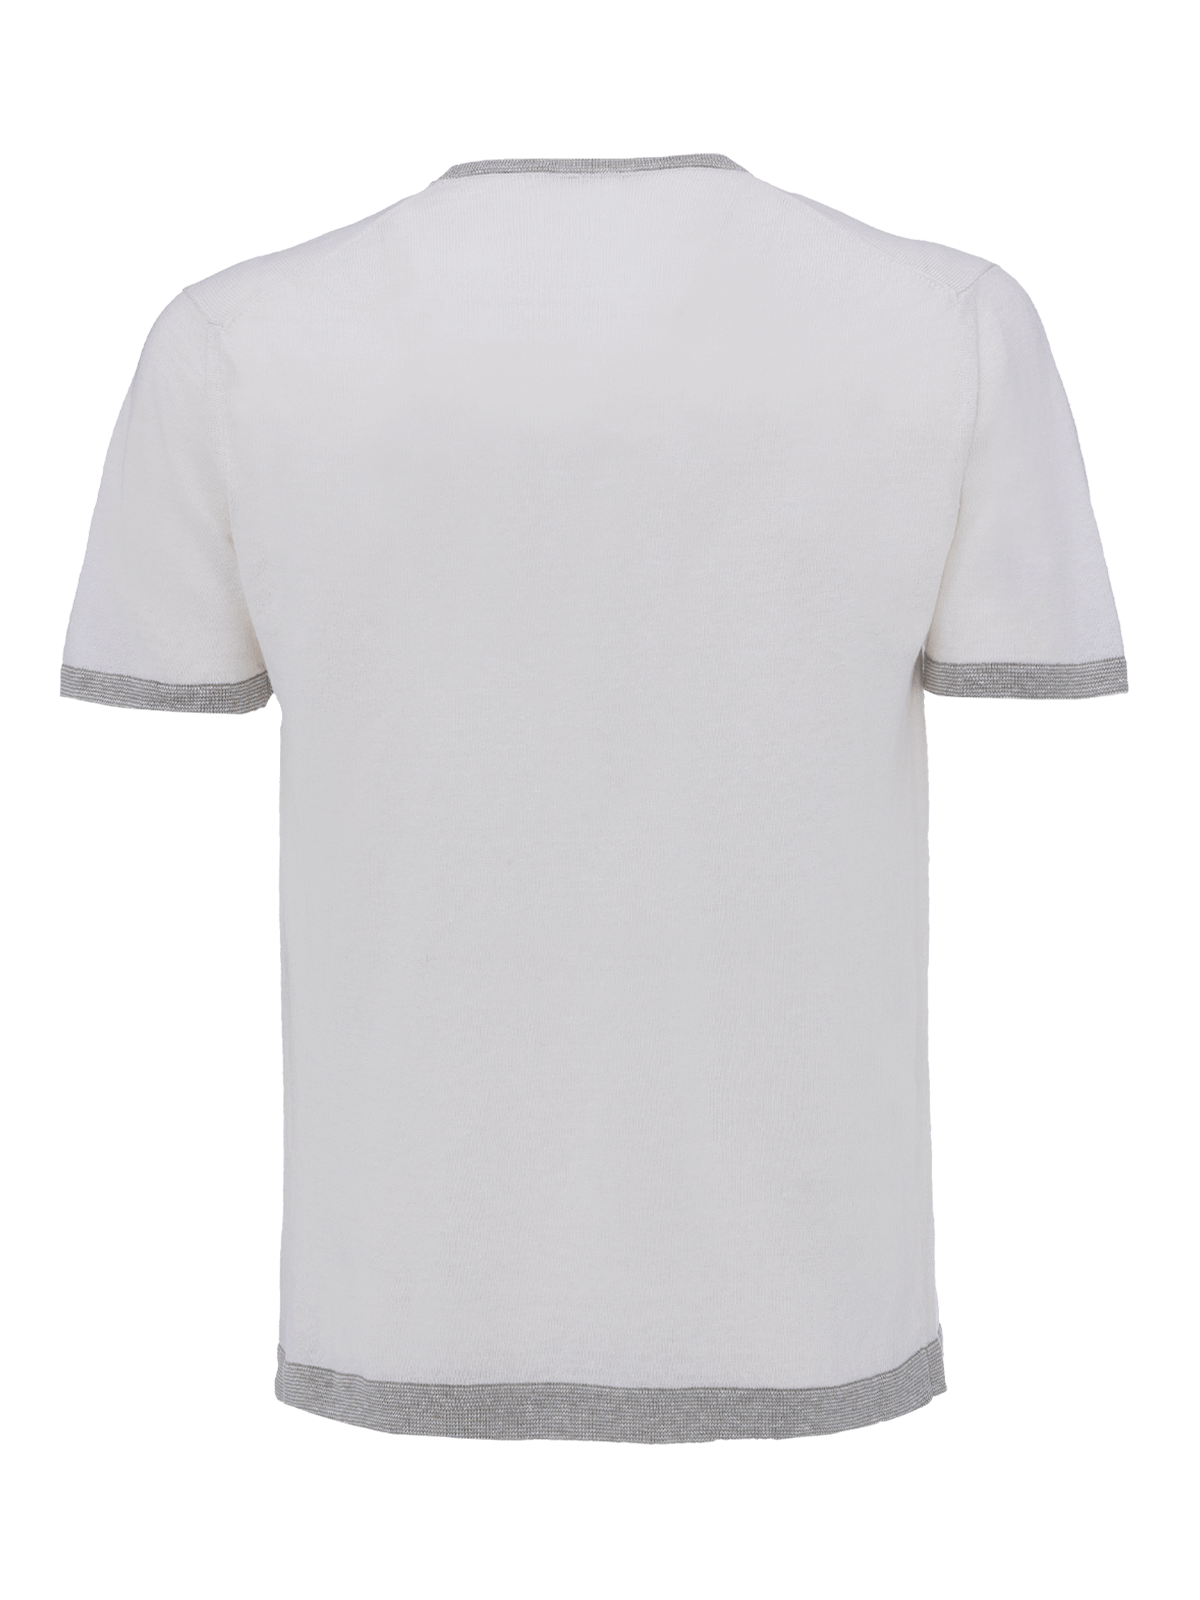  St. Barth linen T-Shirt for man 100% Capri white and light grey linen t-shirt back